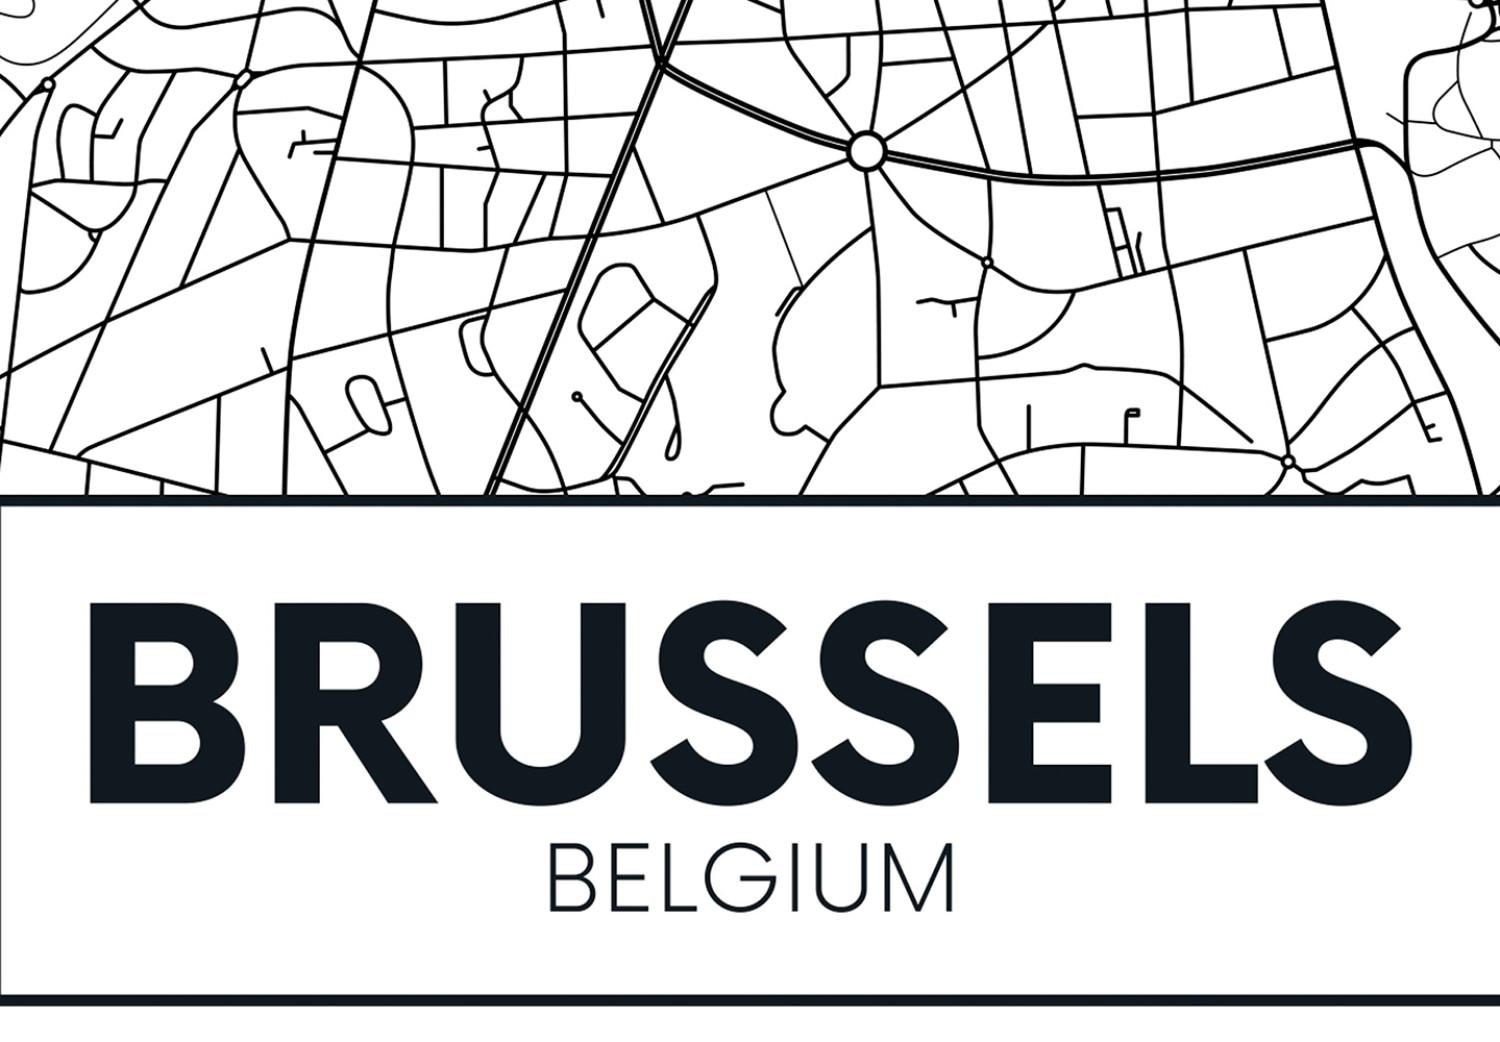 Cuadro Calles de Bruselas - mapa lineal en blanco y negro de la ciudad belga